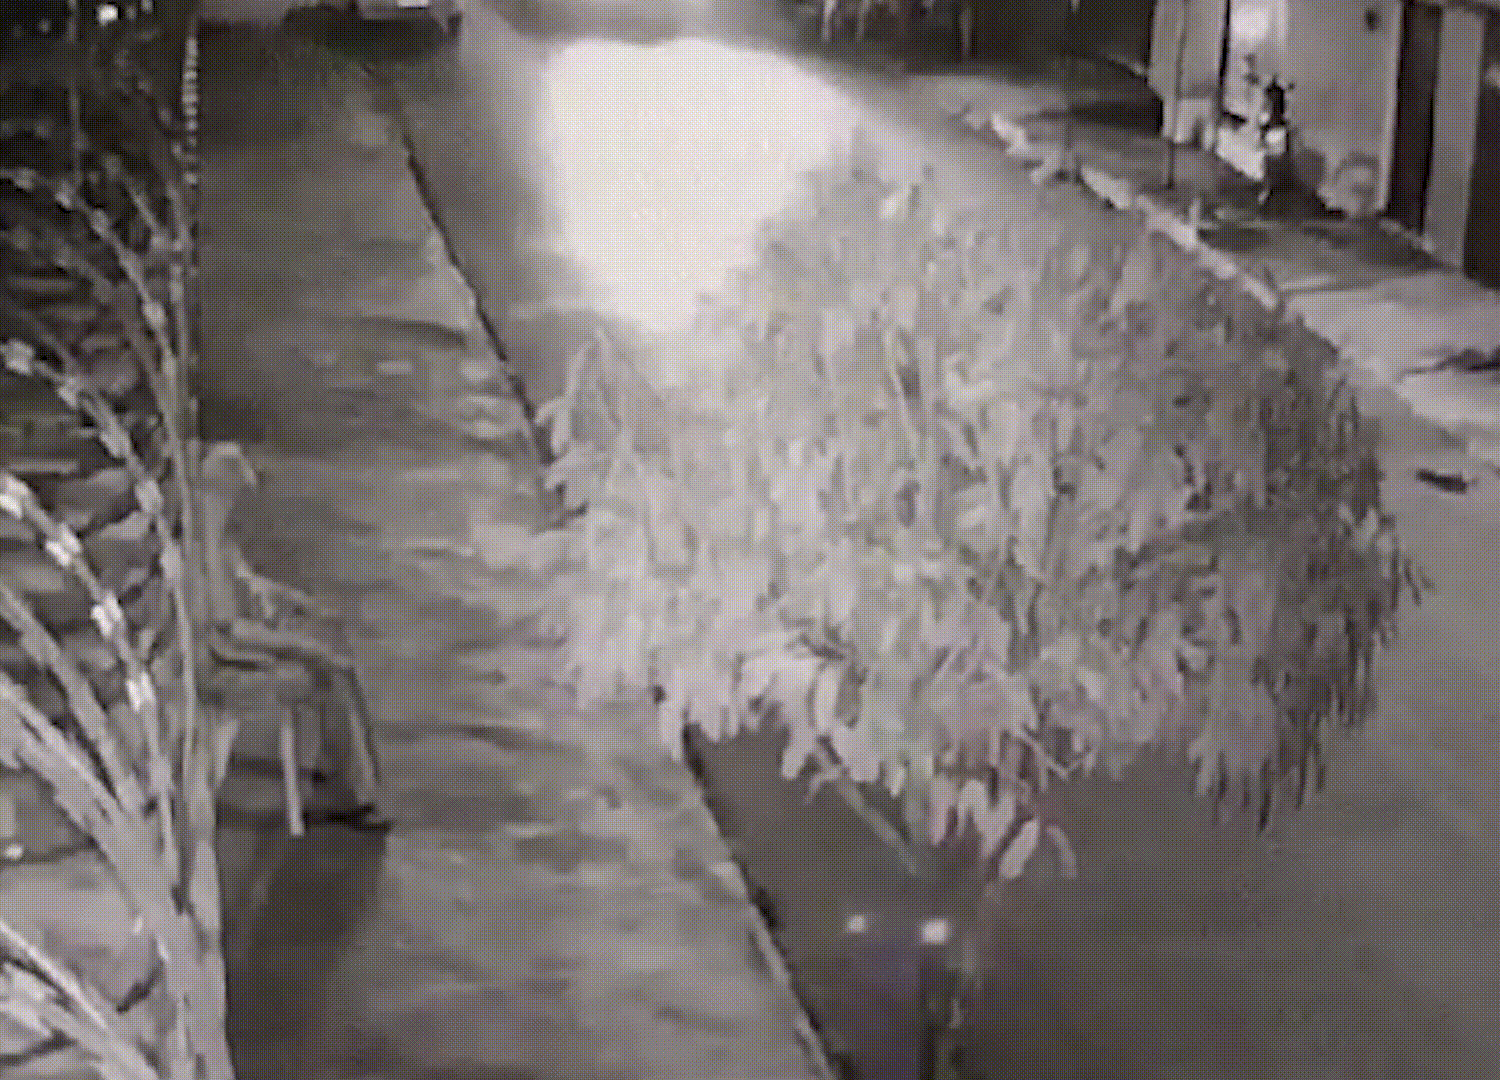 Vídeo impressionante mostra caminhonete desgovernada quase atropelando idoso em Patos de Minas